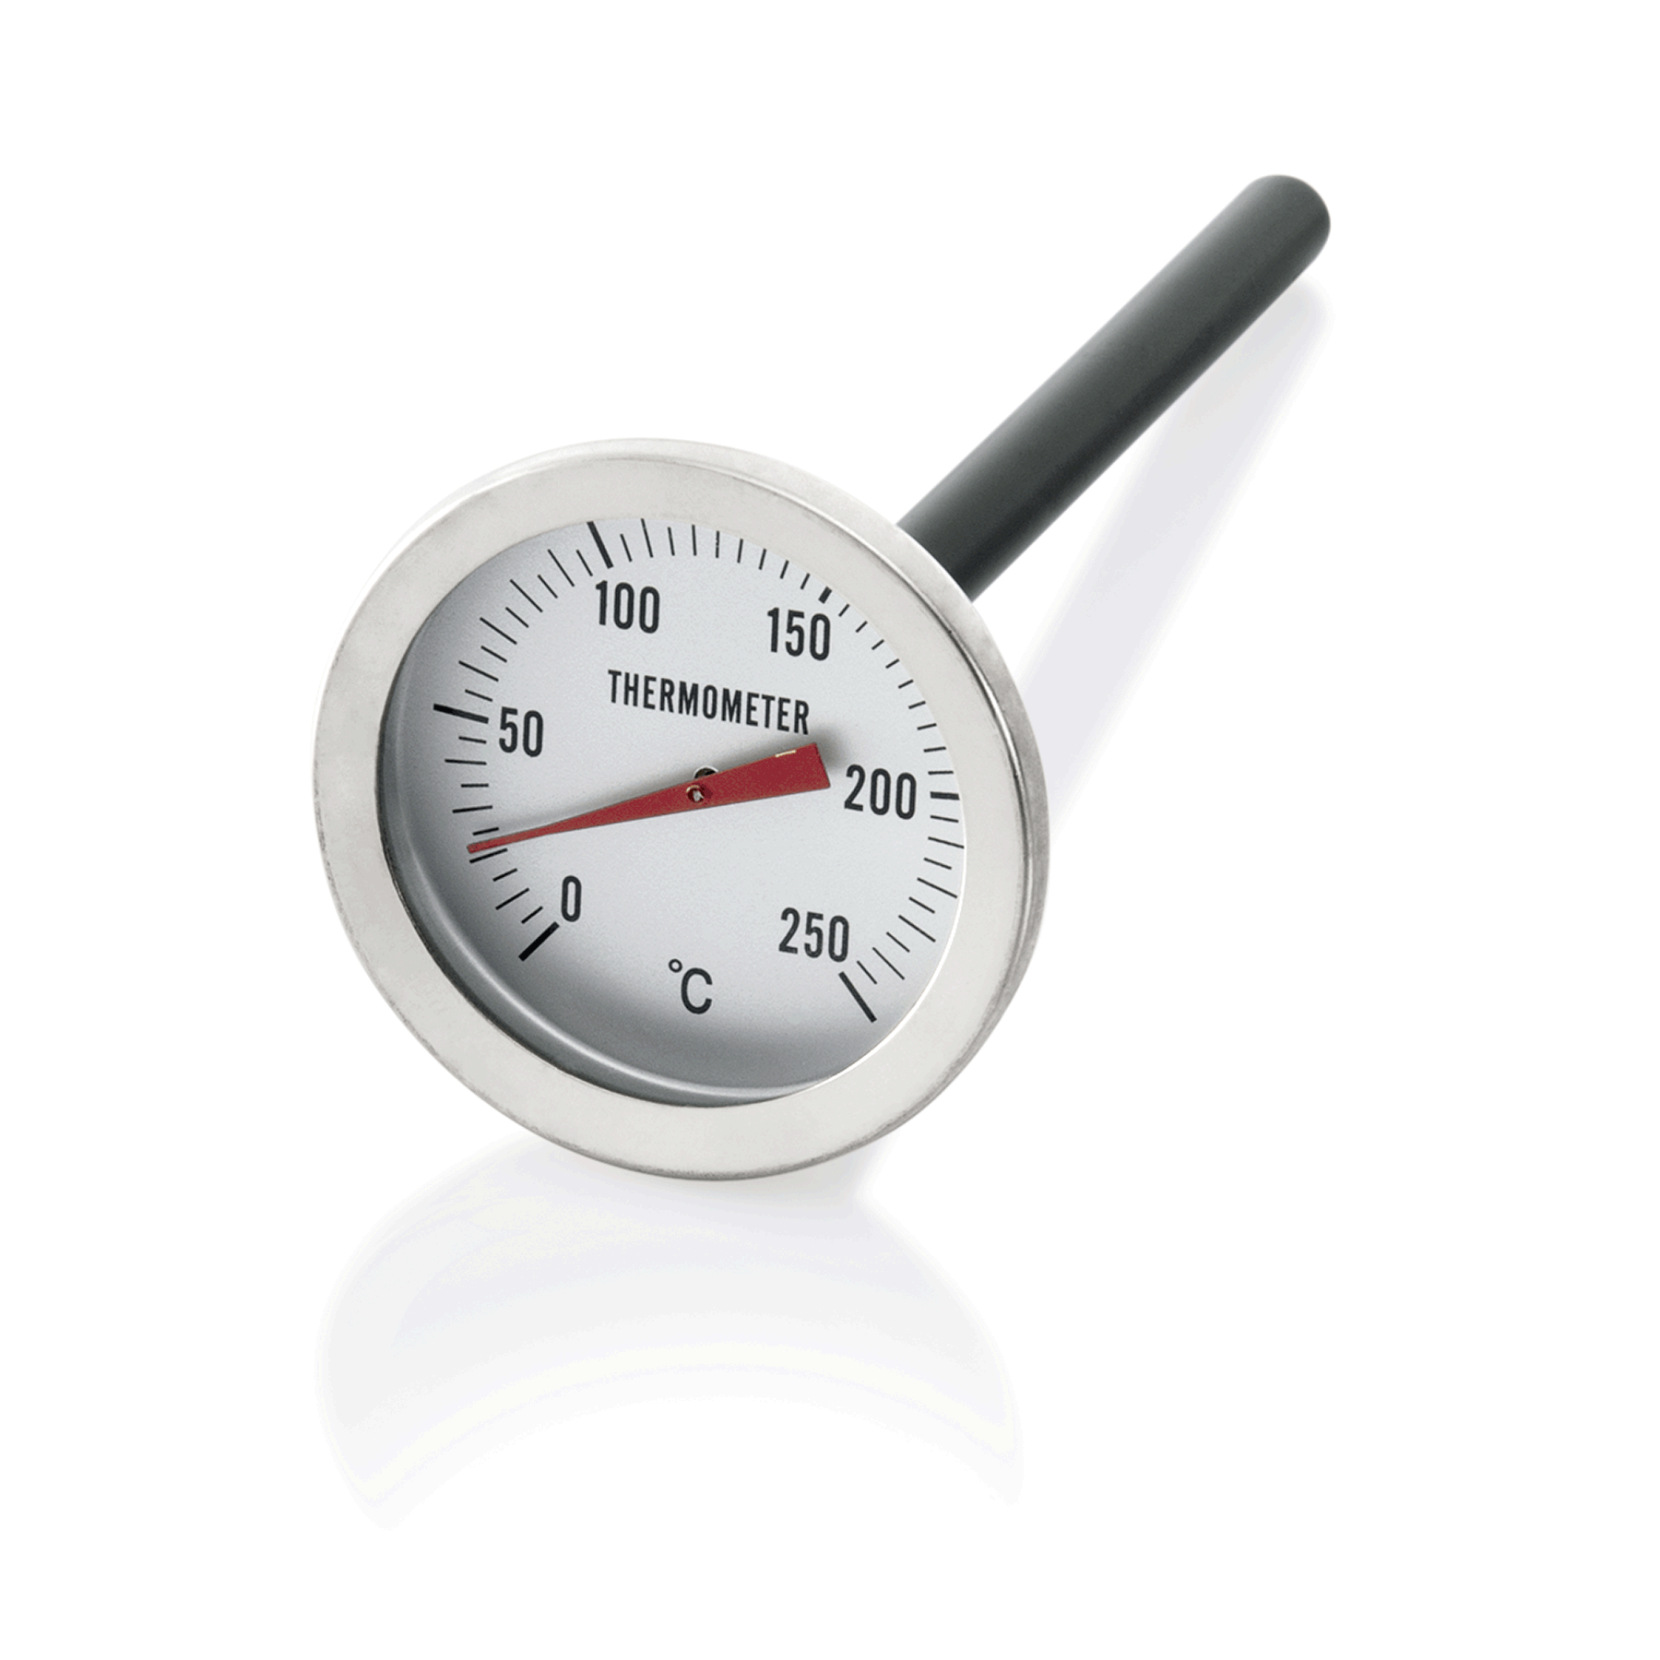 Einstech-Thermometer, Ø 5 cm